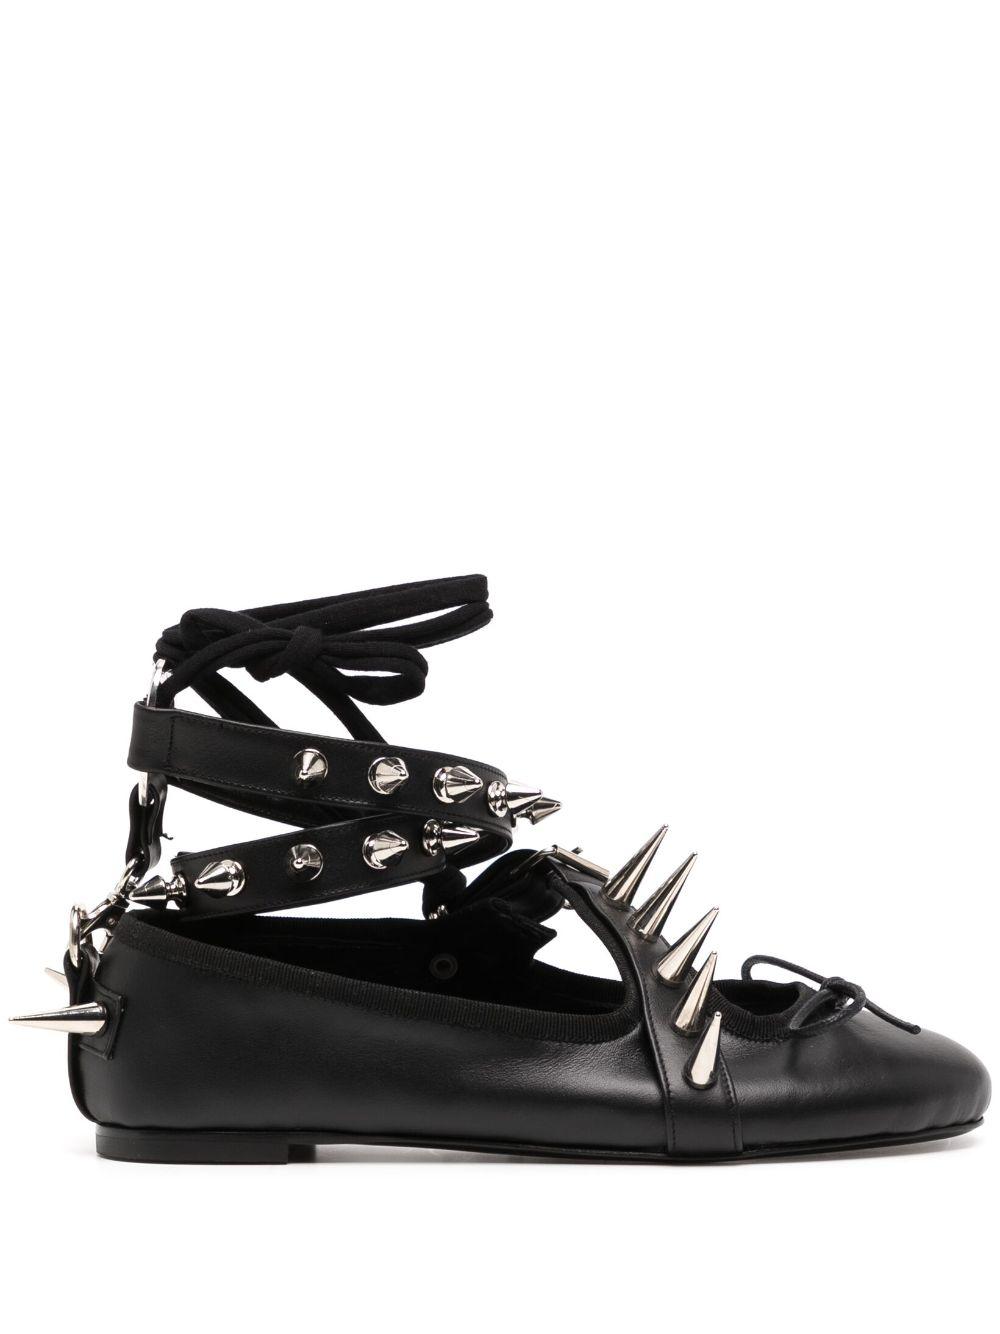 OTTOLINGER Spike Stud Ballerina Shoes in Black | Lyst